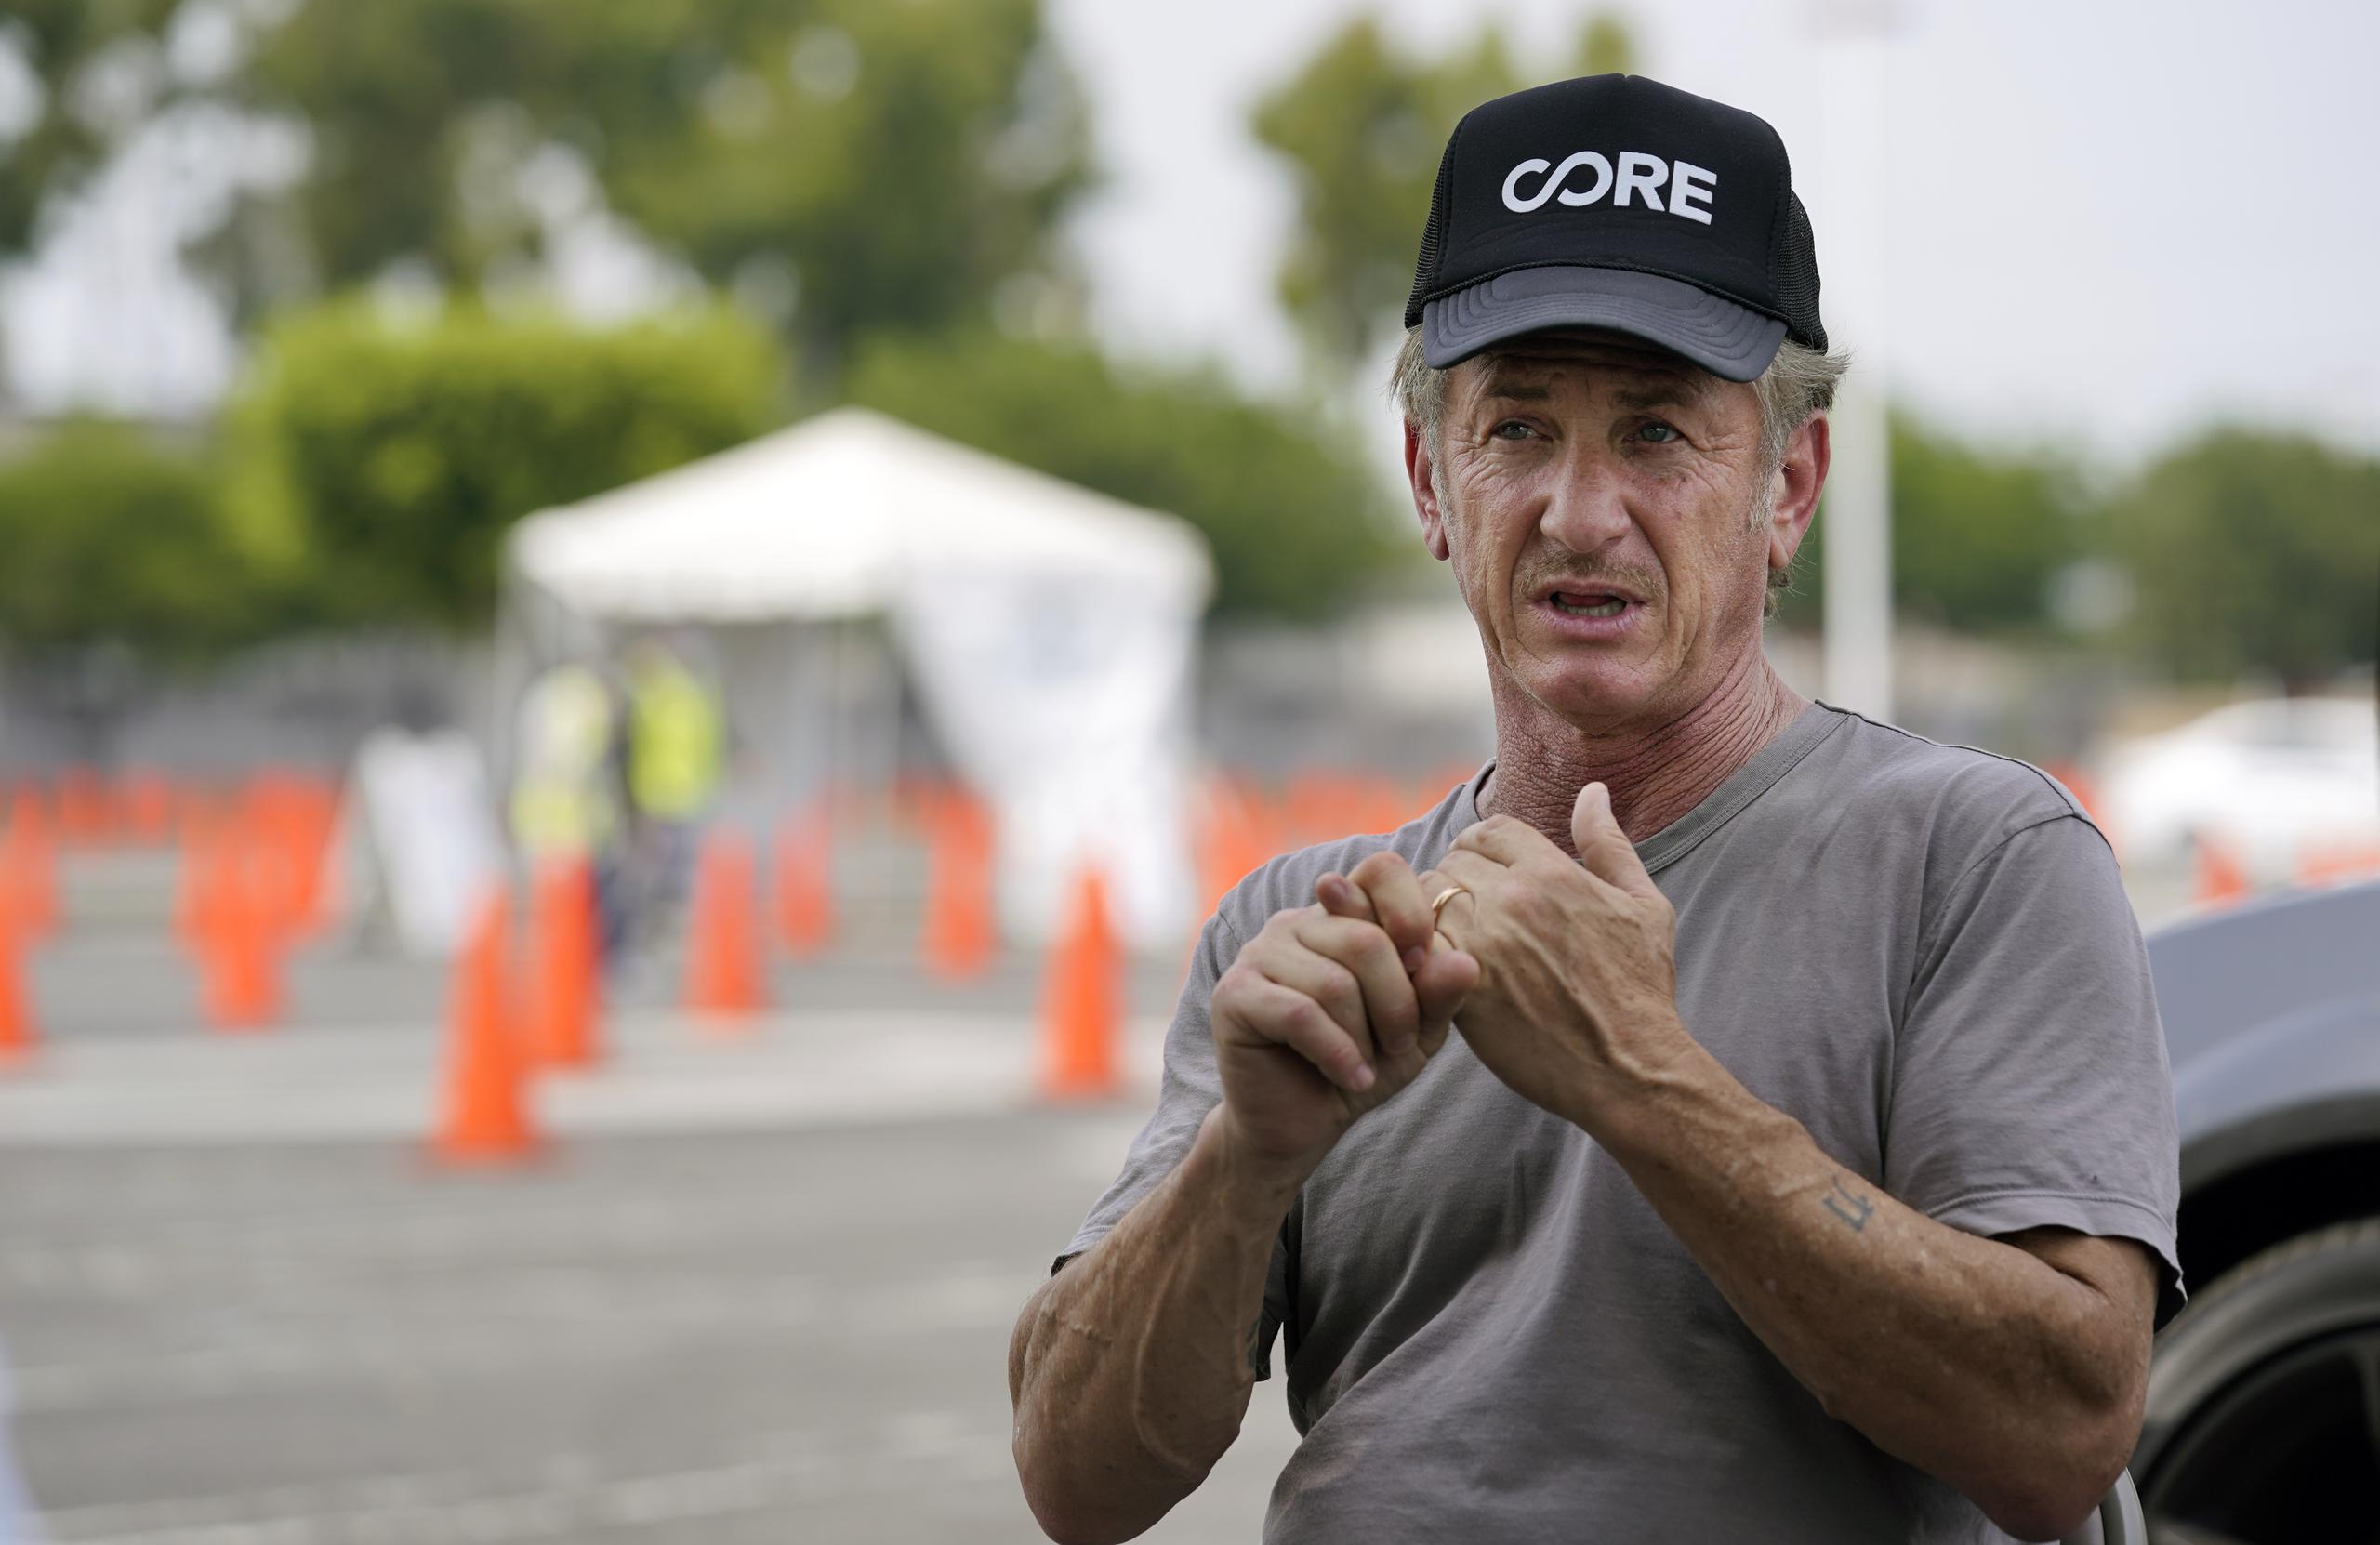 El actor Sean Penn, fundador de Community Organized Relief Effort (CORE), es entrevistado en un centro de pruebas de CORE en el Crenshaw Christian Center, en Los Angeles.